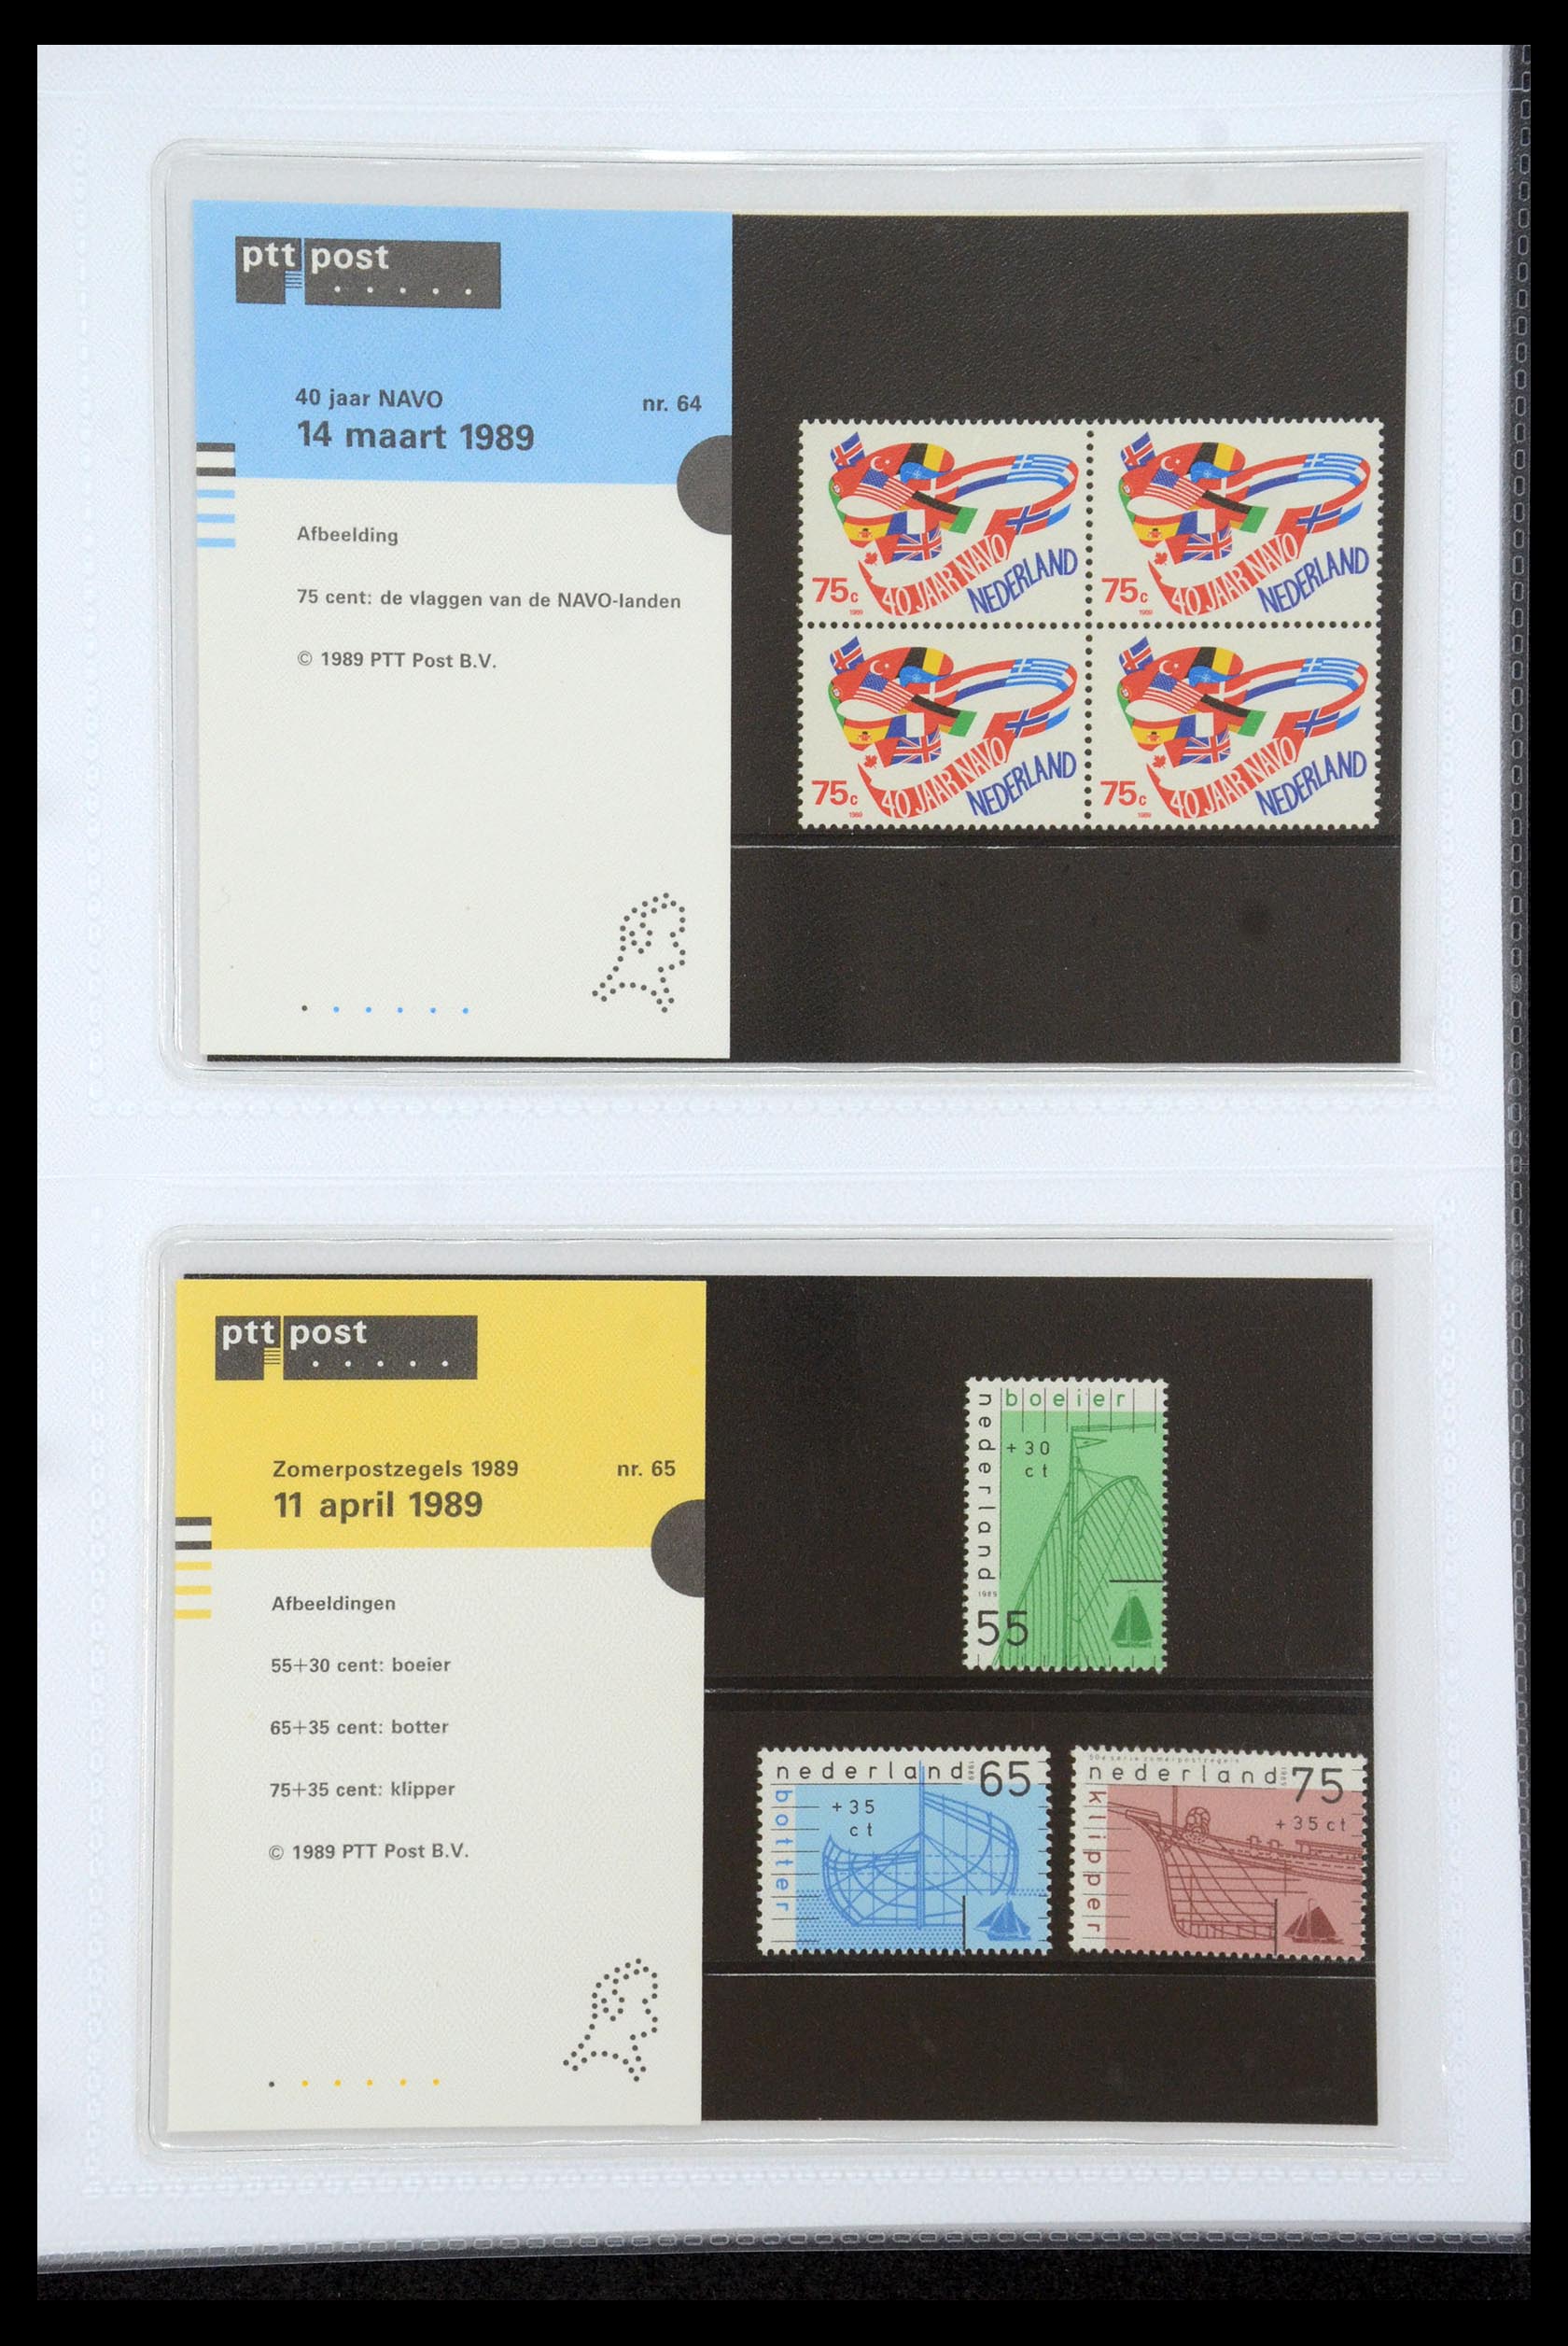 35947 033 - Stamp Collection 35947 Netherlands PTT presentation packs 1982-2019!